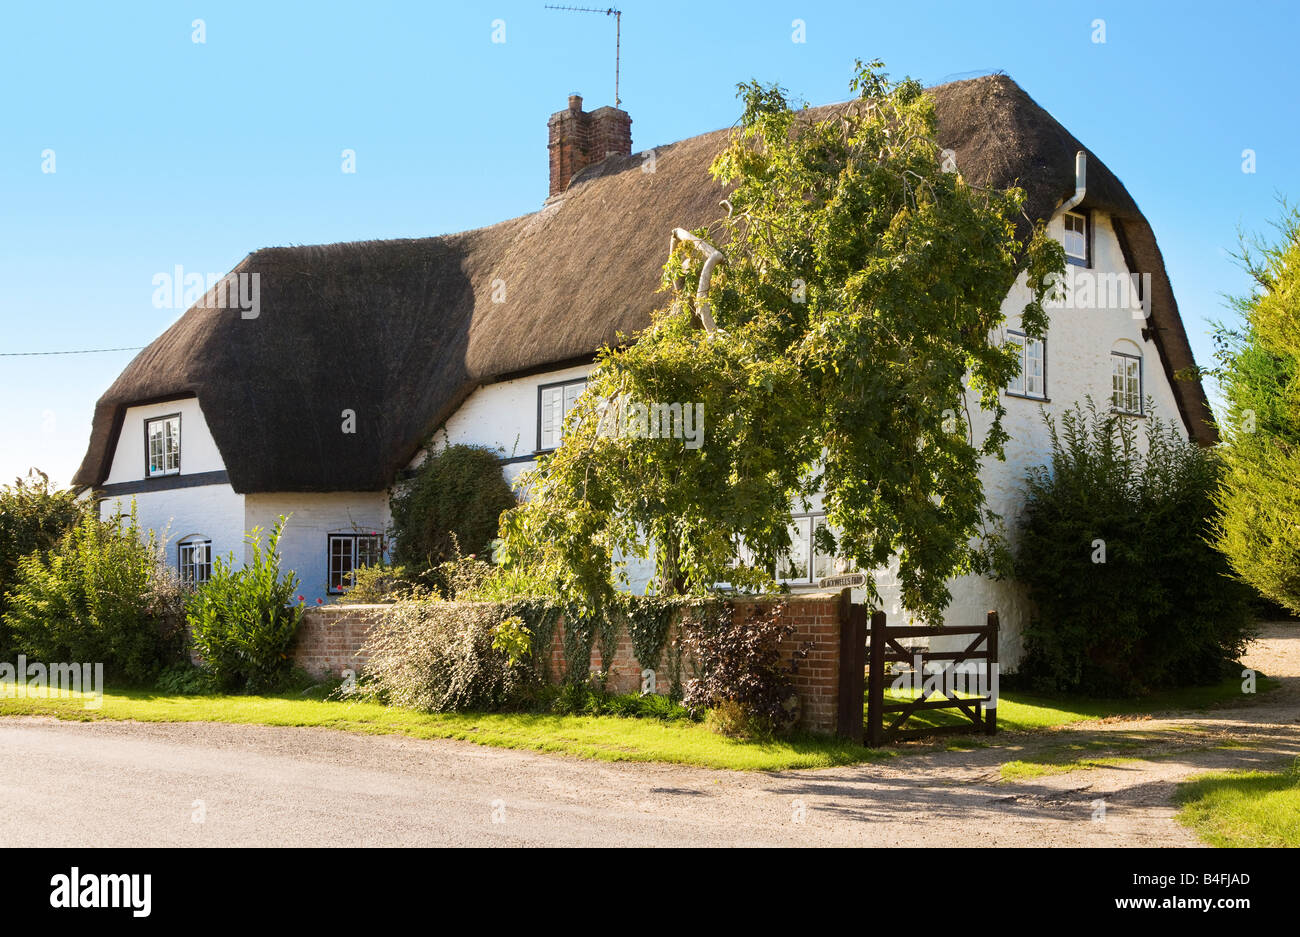 Chalet chaume typiquement anglais dans le village d'Évêques Canning, Wiltshire, Angleterre, Grande-Bretagne, Royaume-Uni Banque D'Images